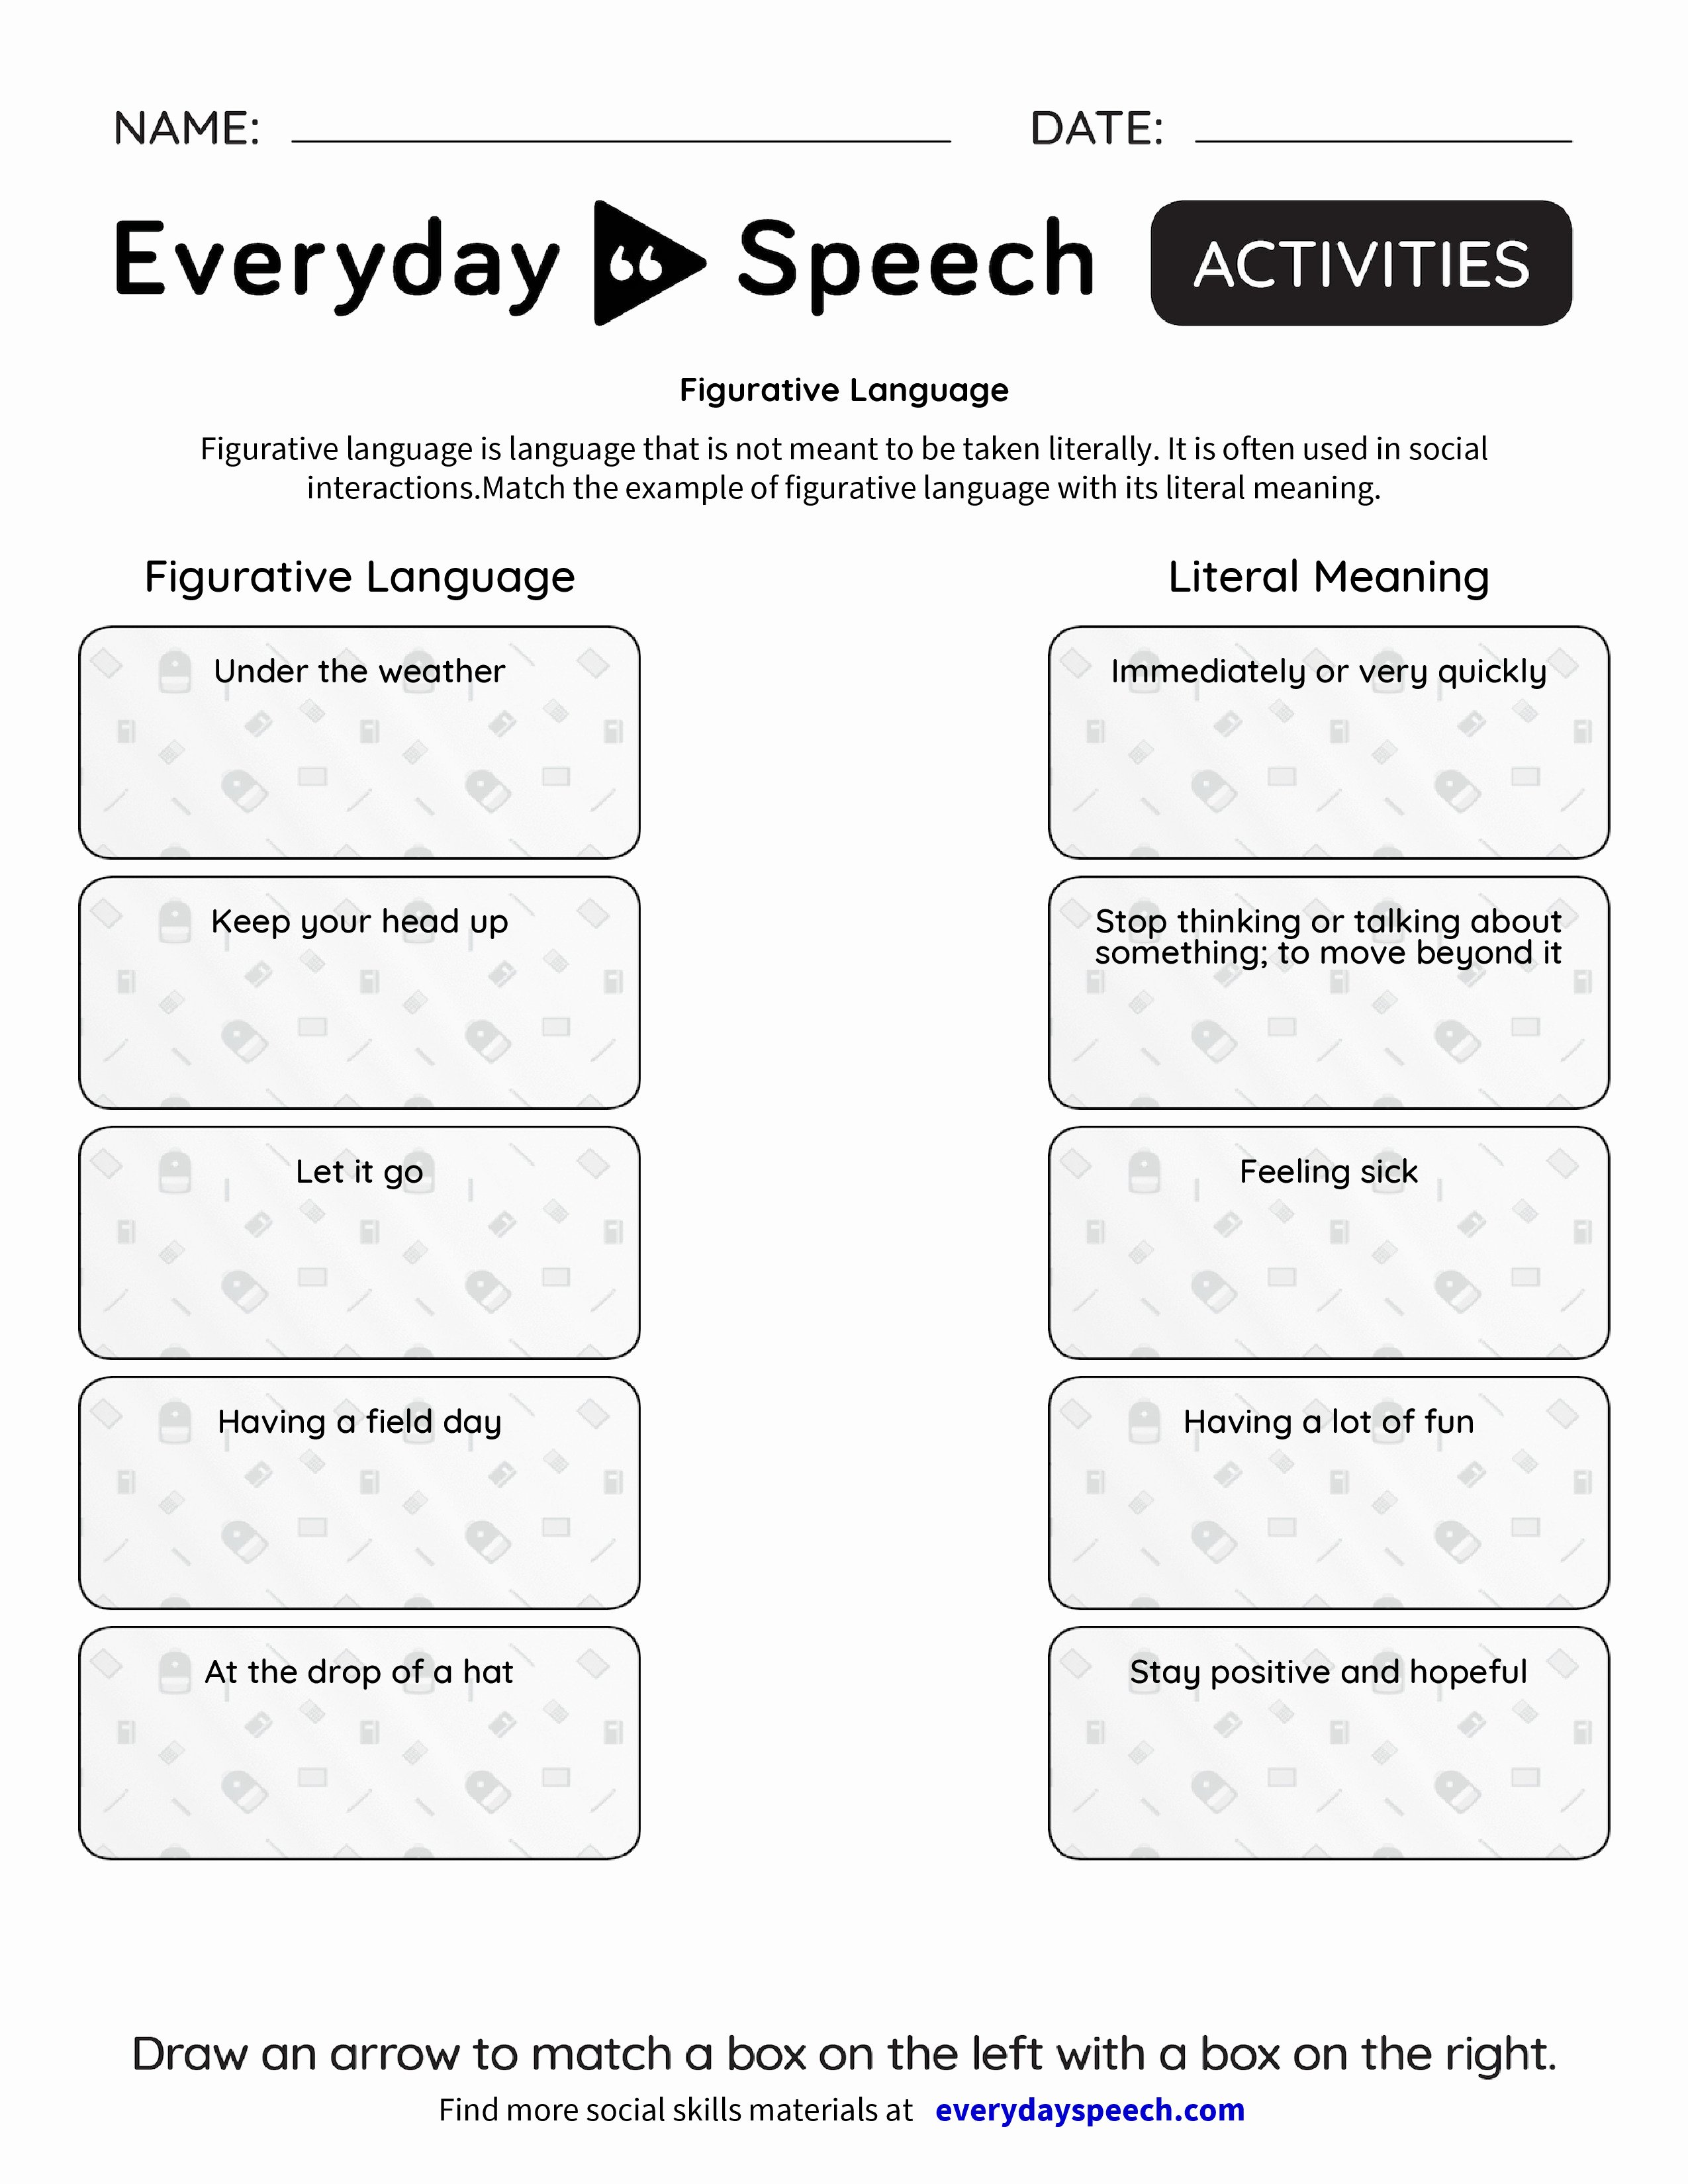 Figurative Language Worksheet 2 Answers Awesome Figurative Language Everyday Speech Everyday Speech